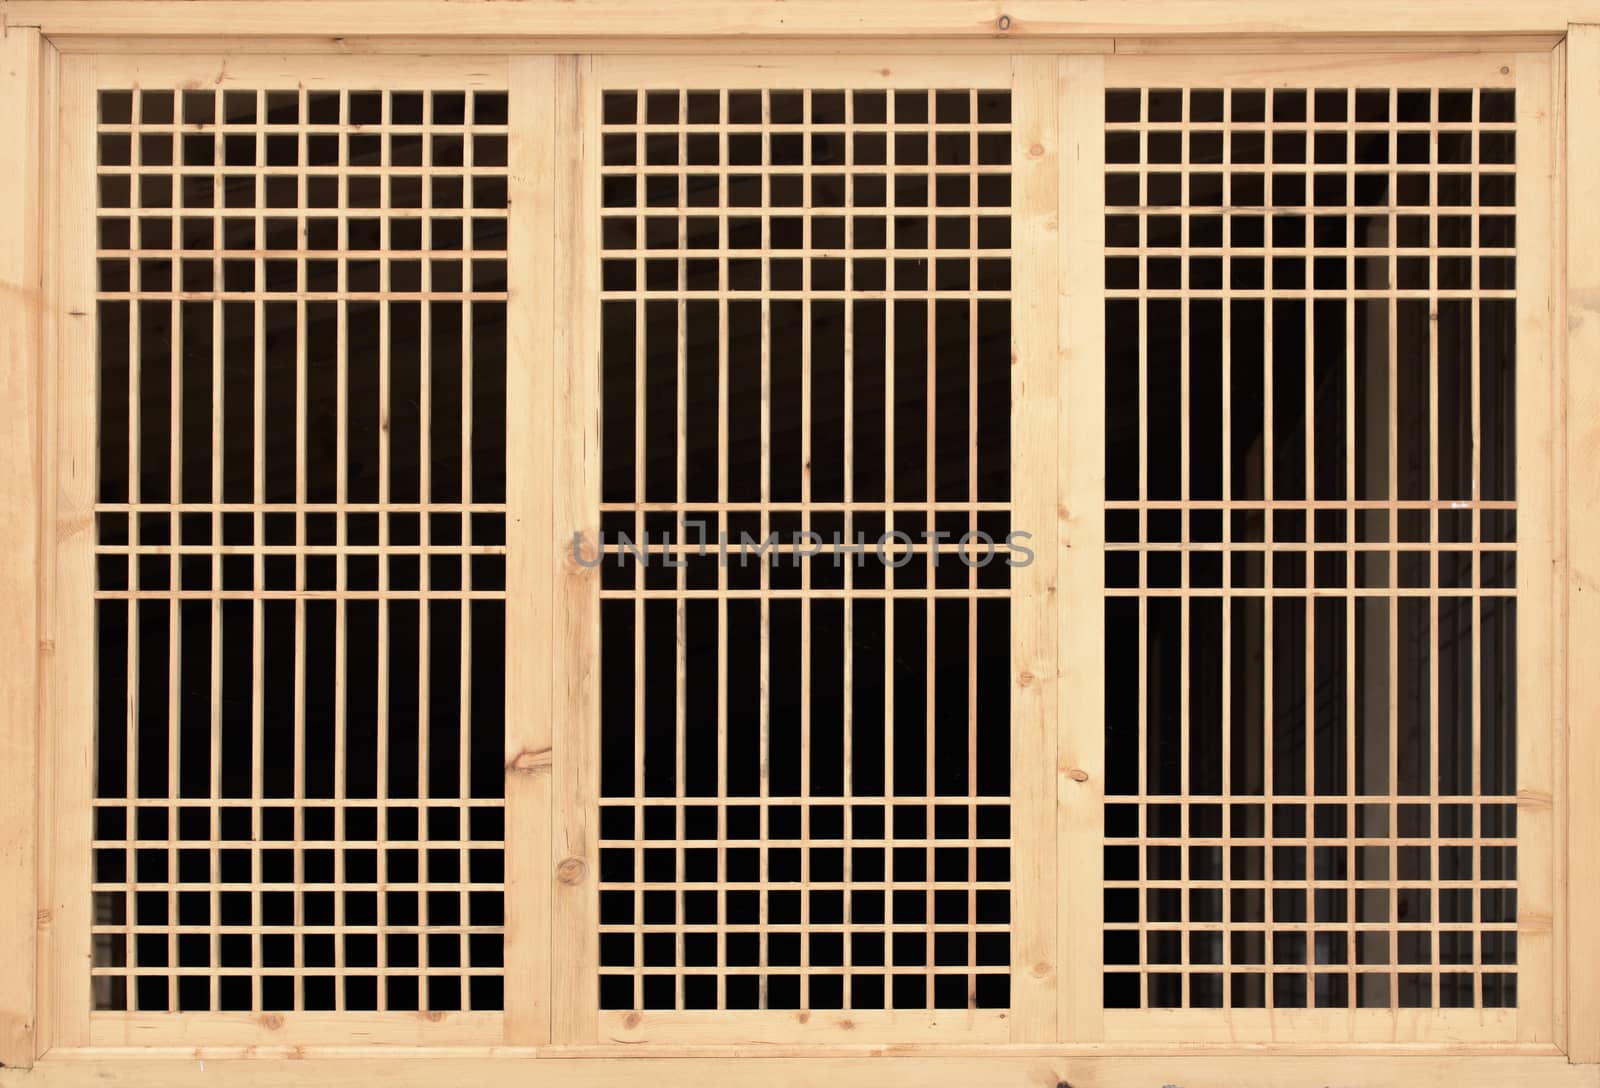 Wooden lattice on the window. Lattice window frame